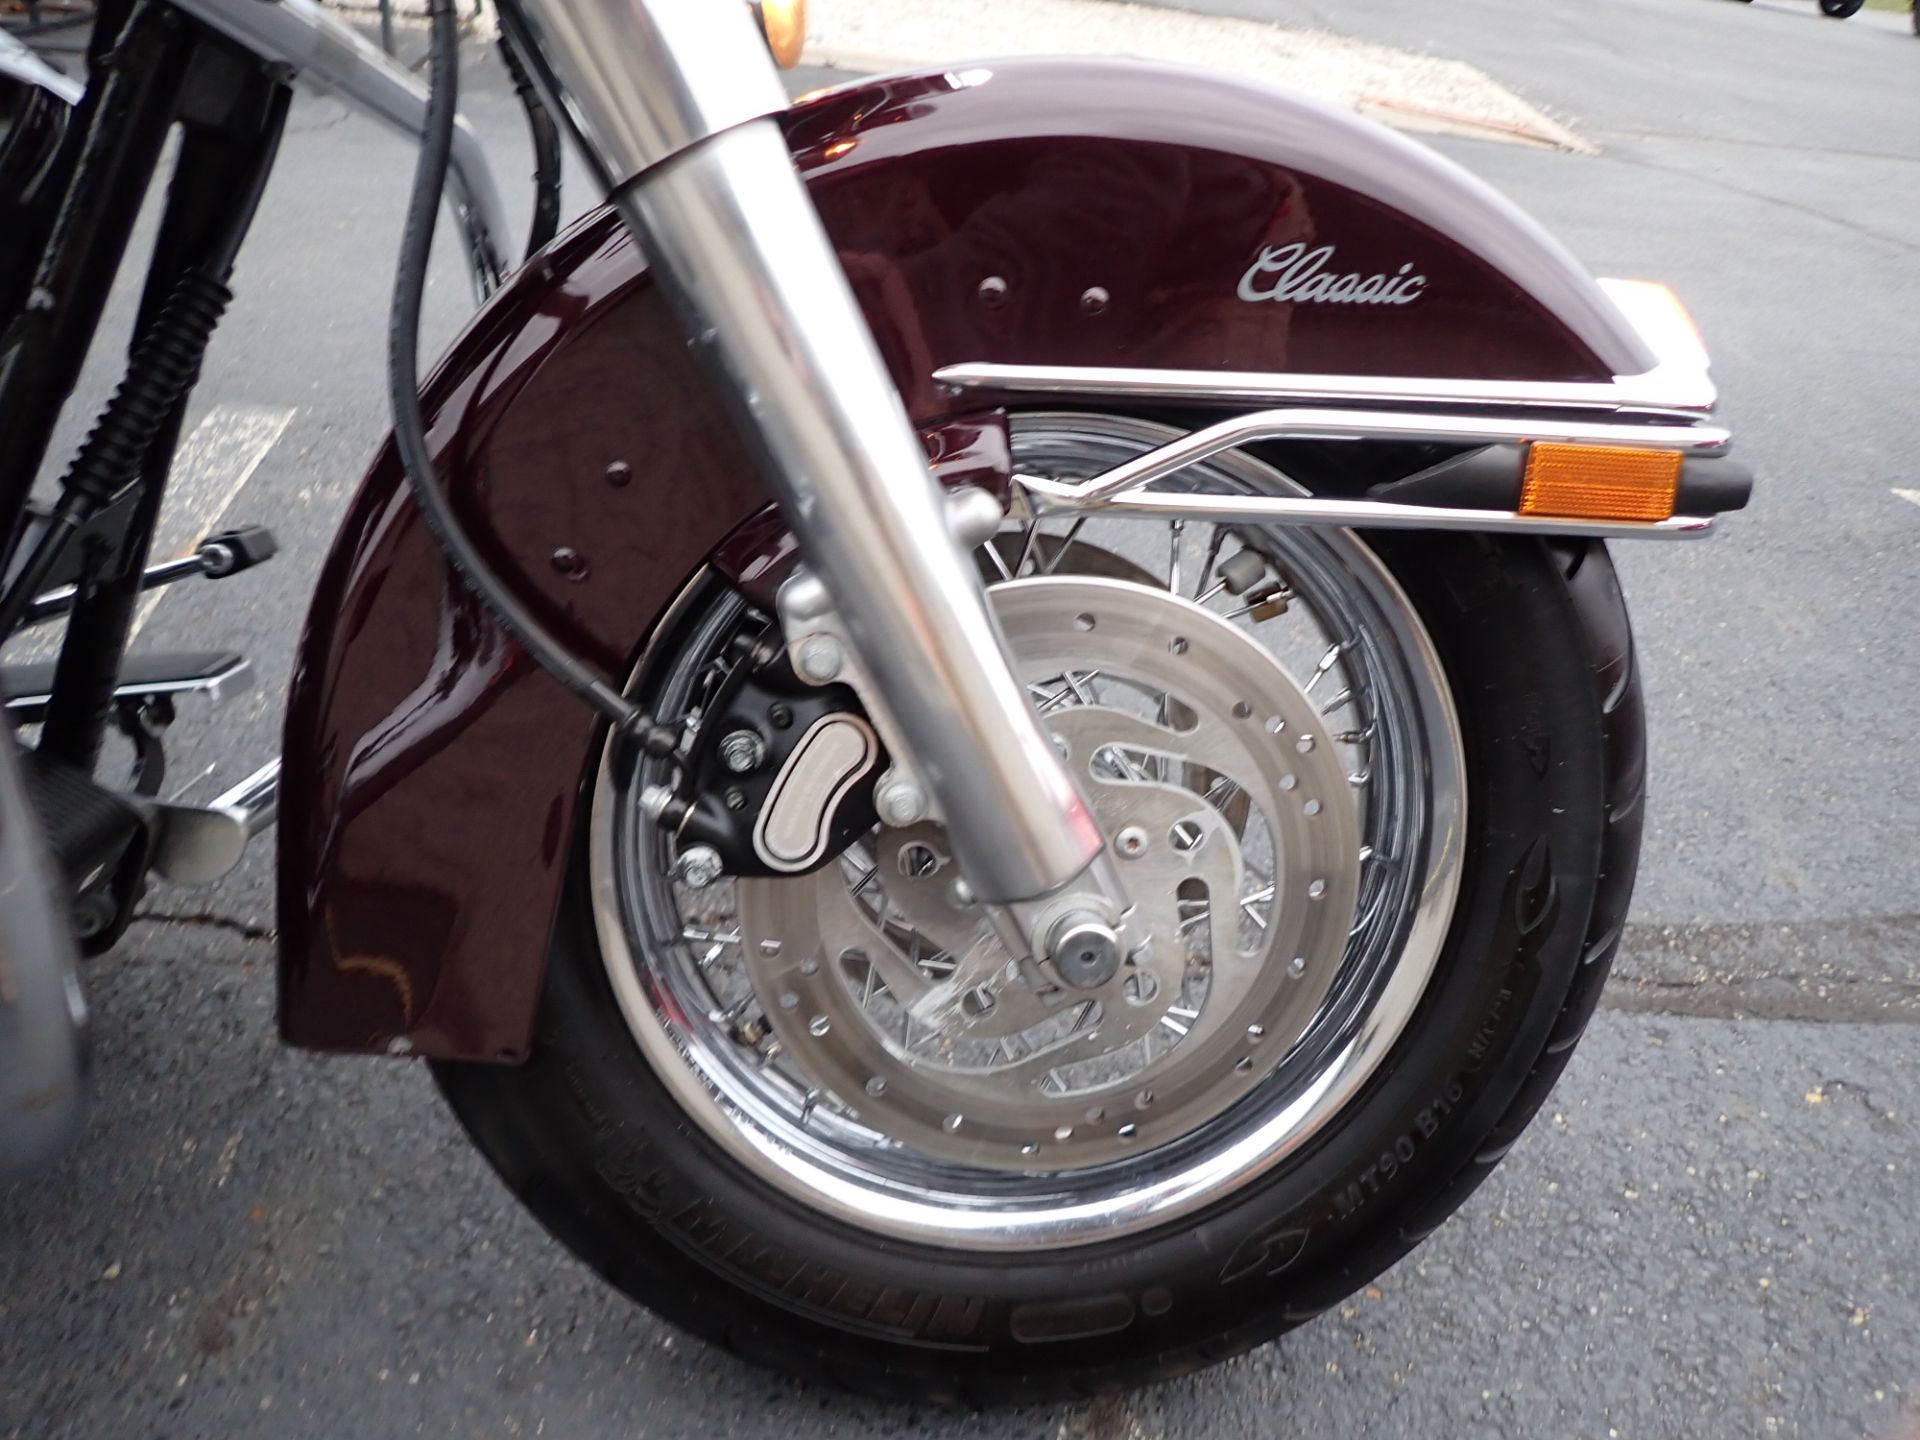 2007 Harley-Davidson Electra Glide® Classic in Massillon, Ohio - Photo 2